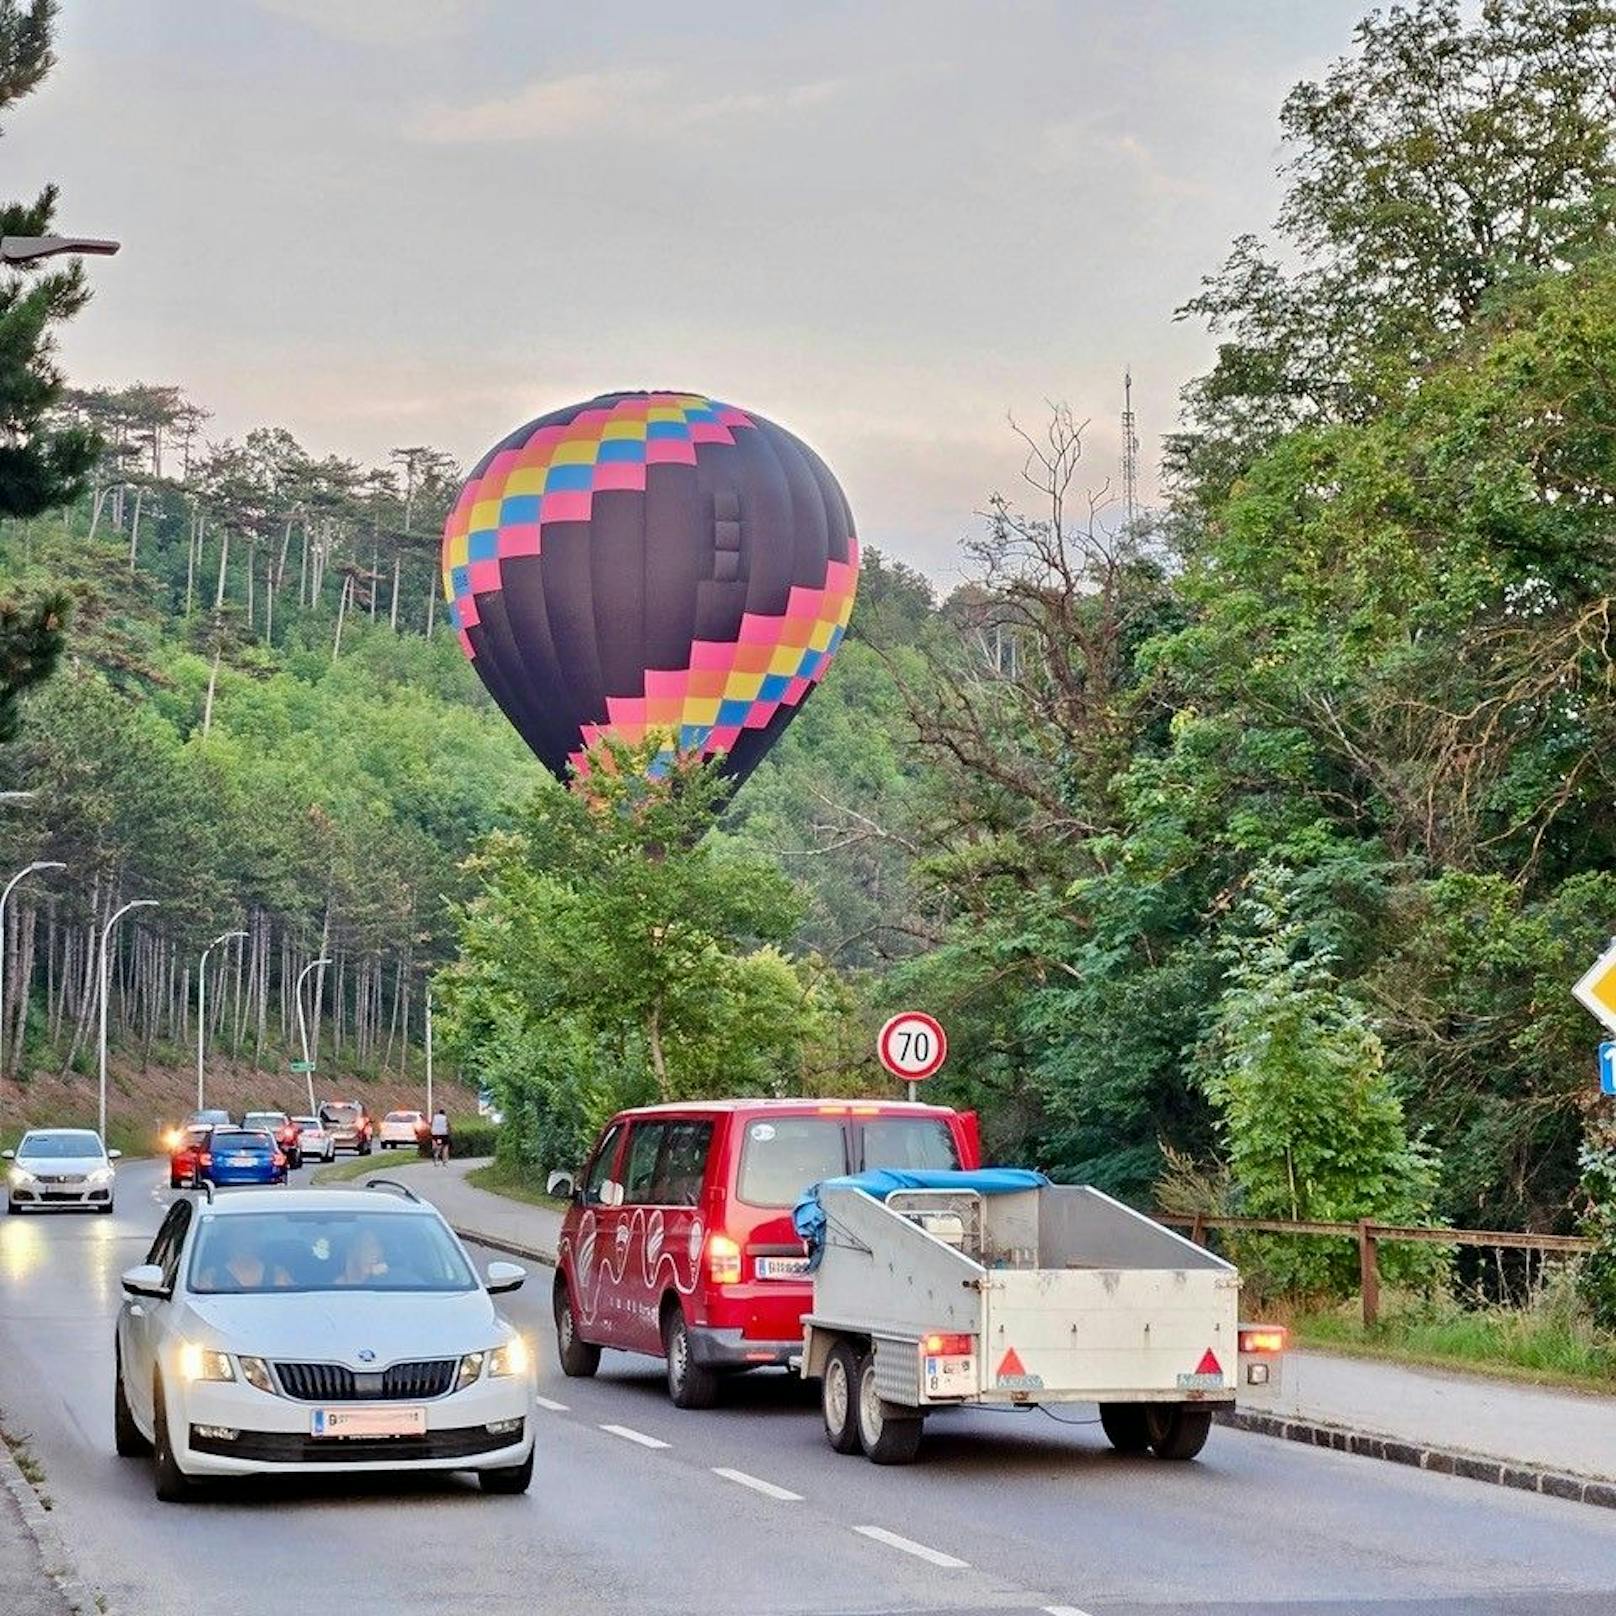 Tiefflug! Heißluftballon landete fast auf Bundesstraße